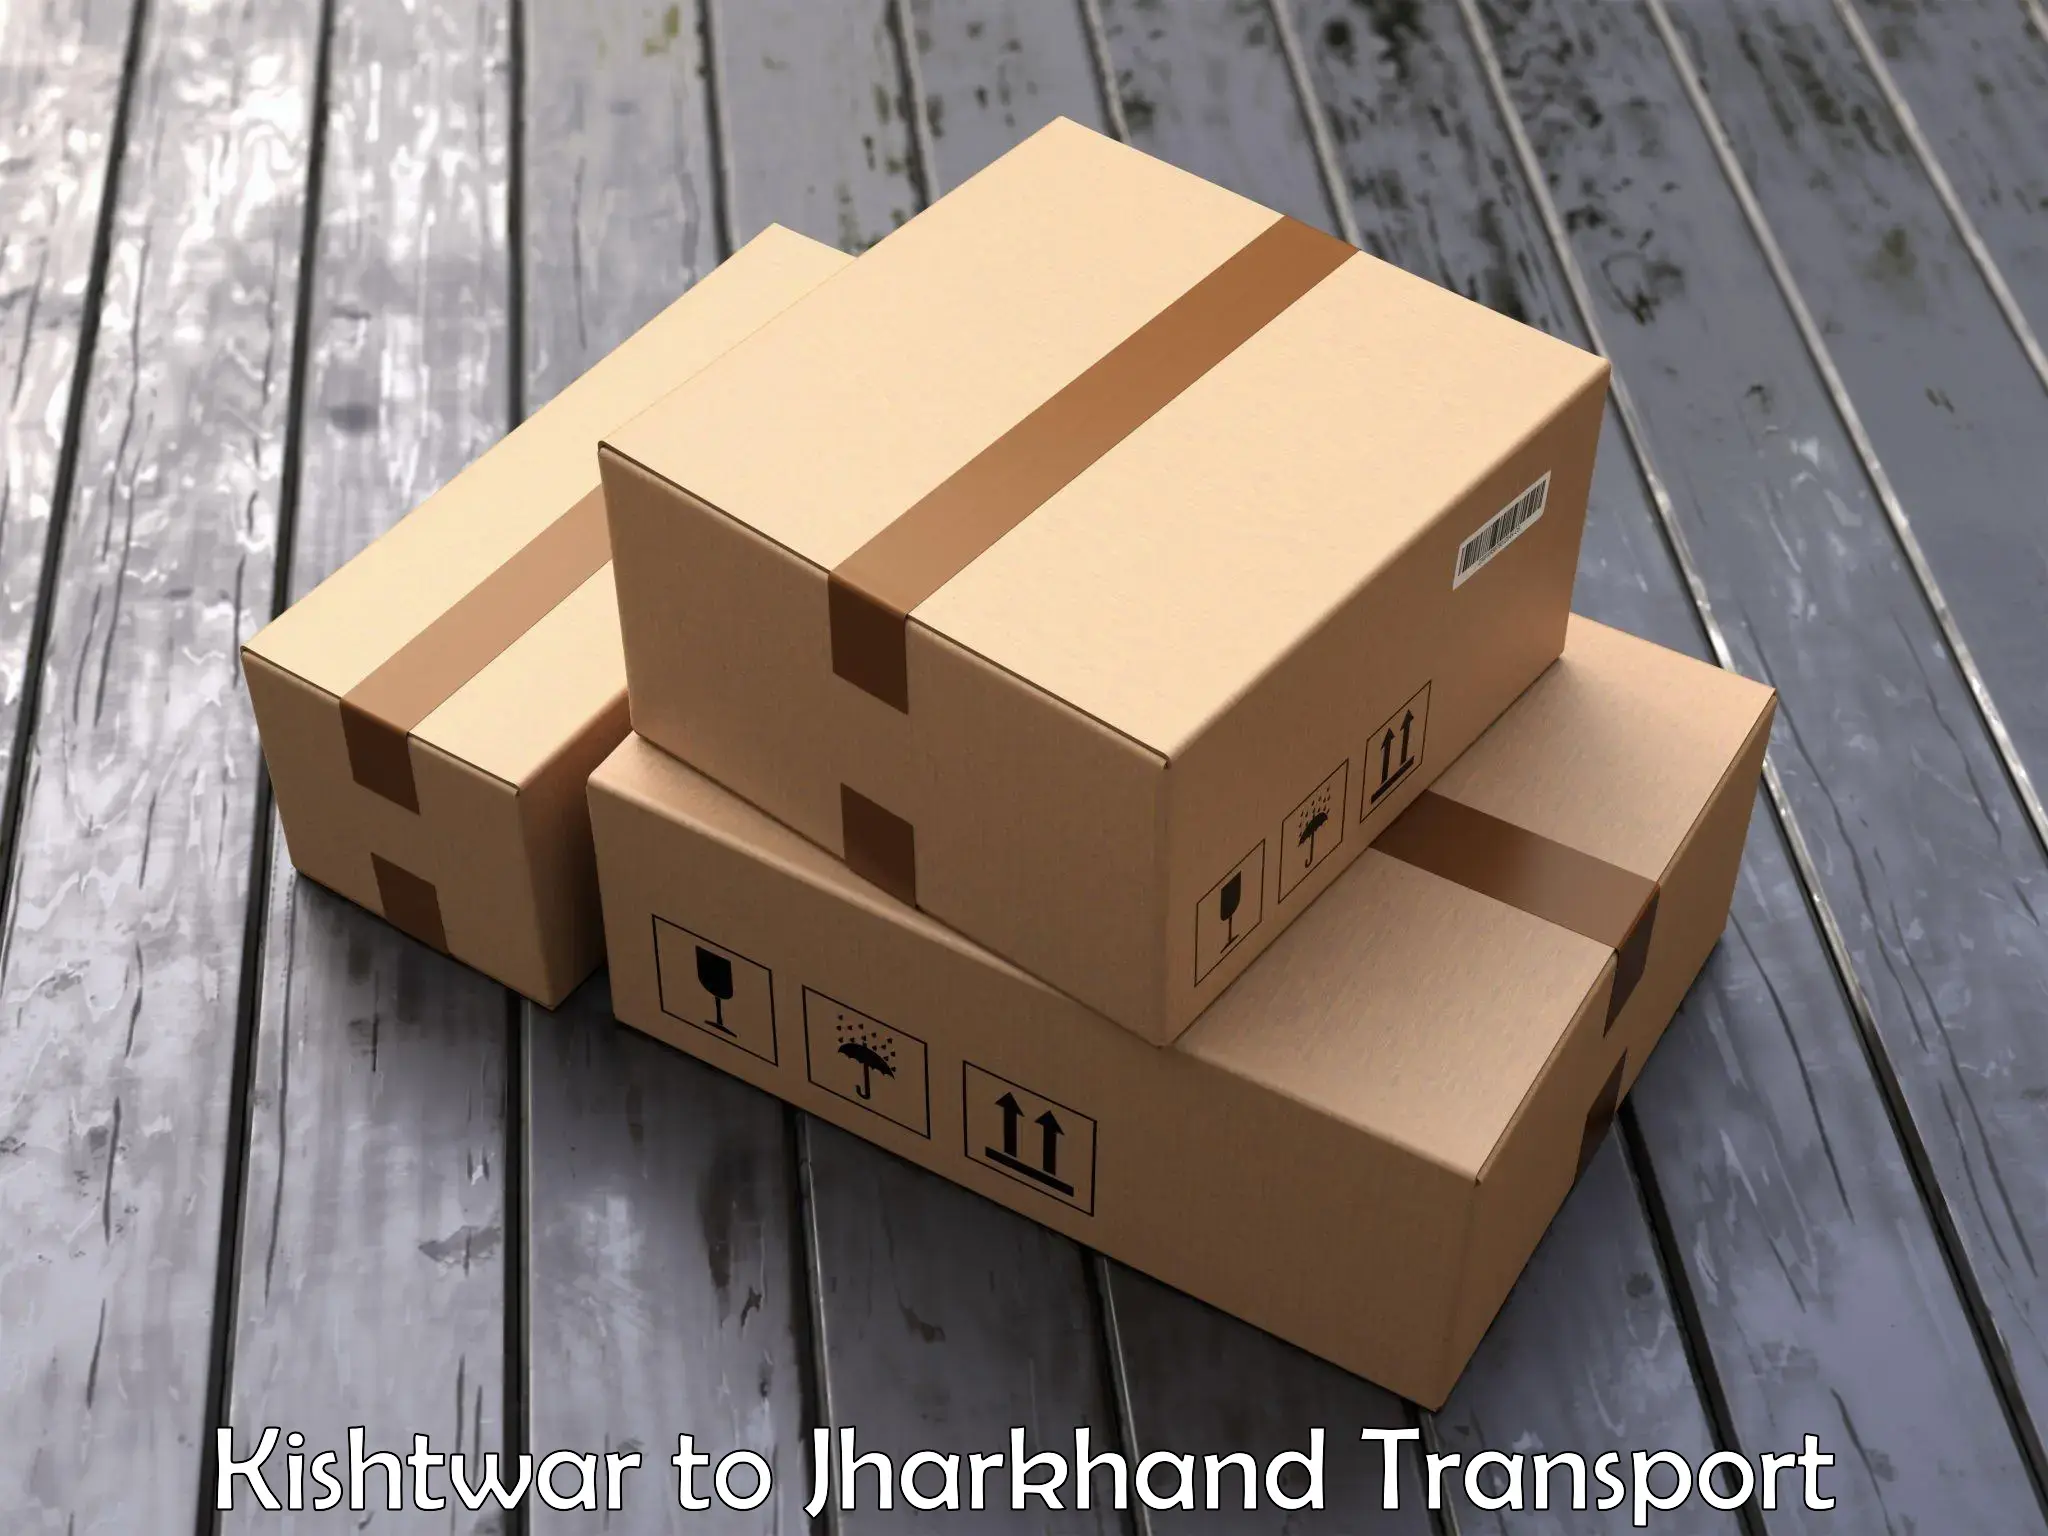 Shipping partner Kishtwar to Palojori